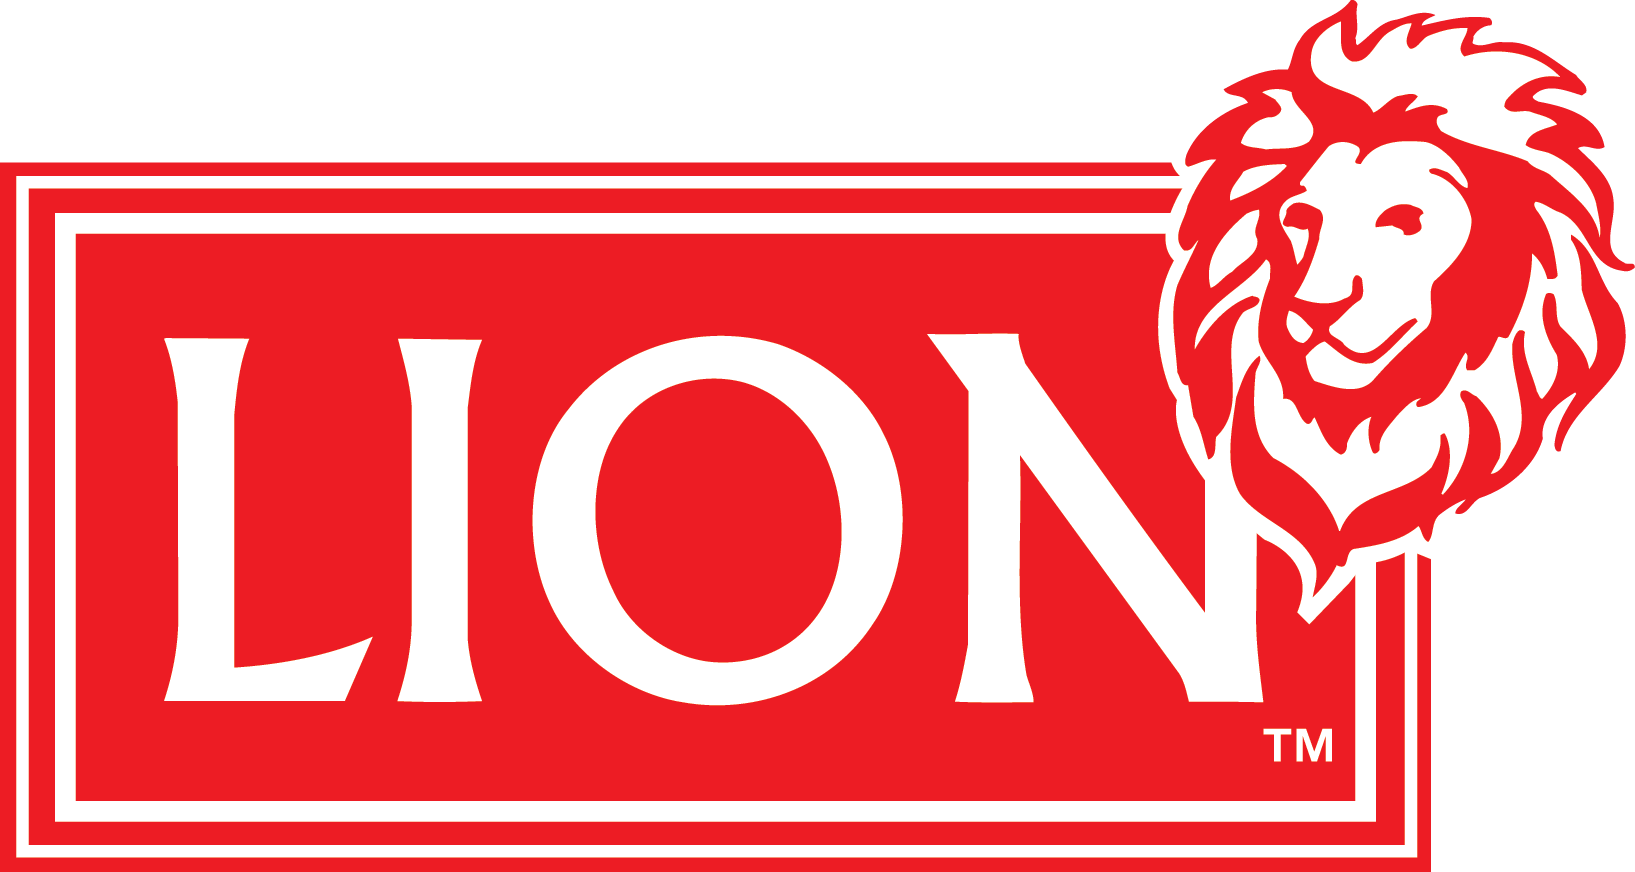 Lion UK